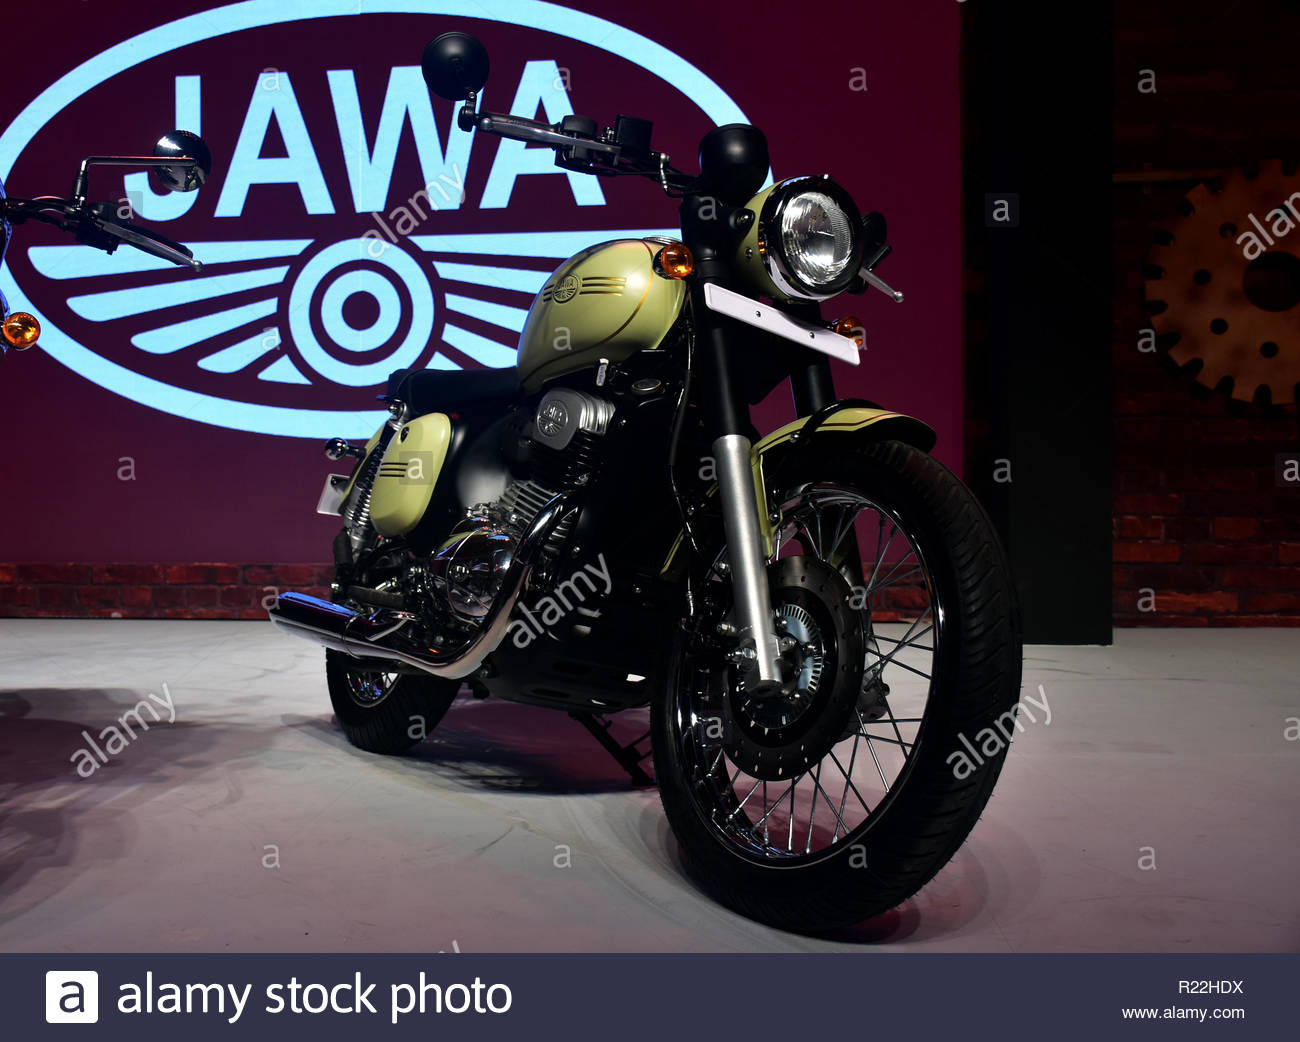 15th Nov, - New Jawa Bike Hd - HD Wallpaper 